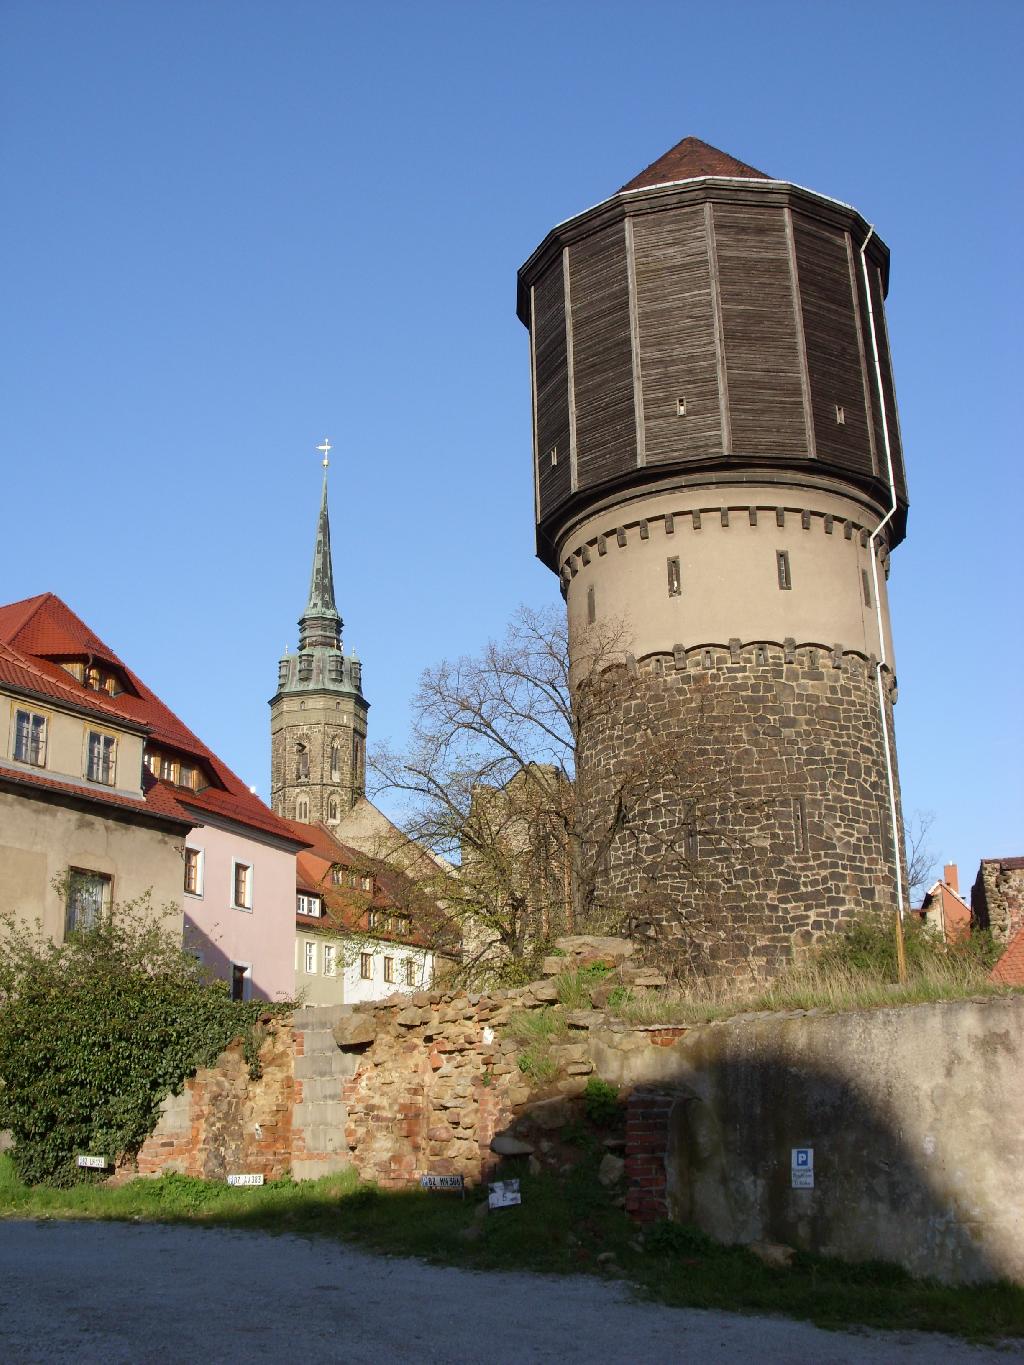 Mönchskirche / Wasserturm in Bautzen